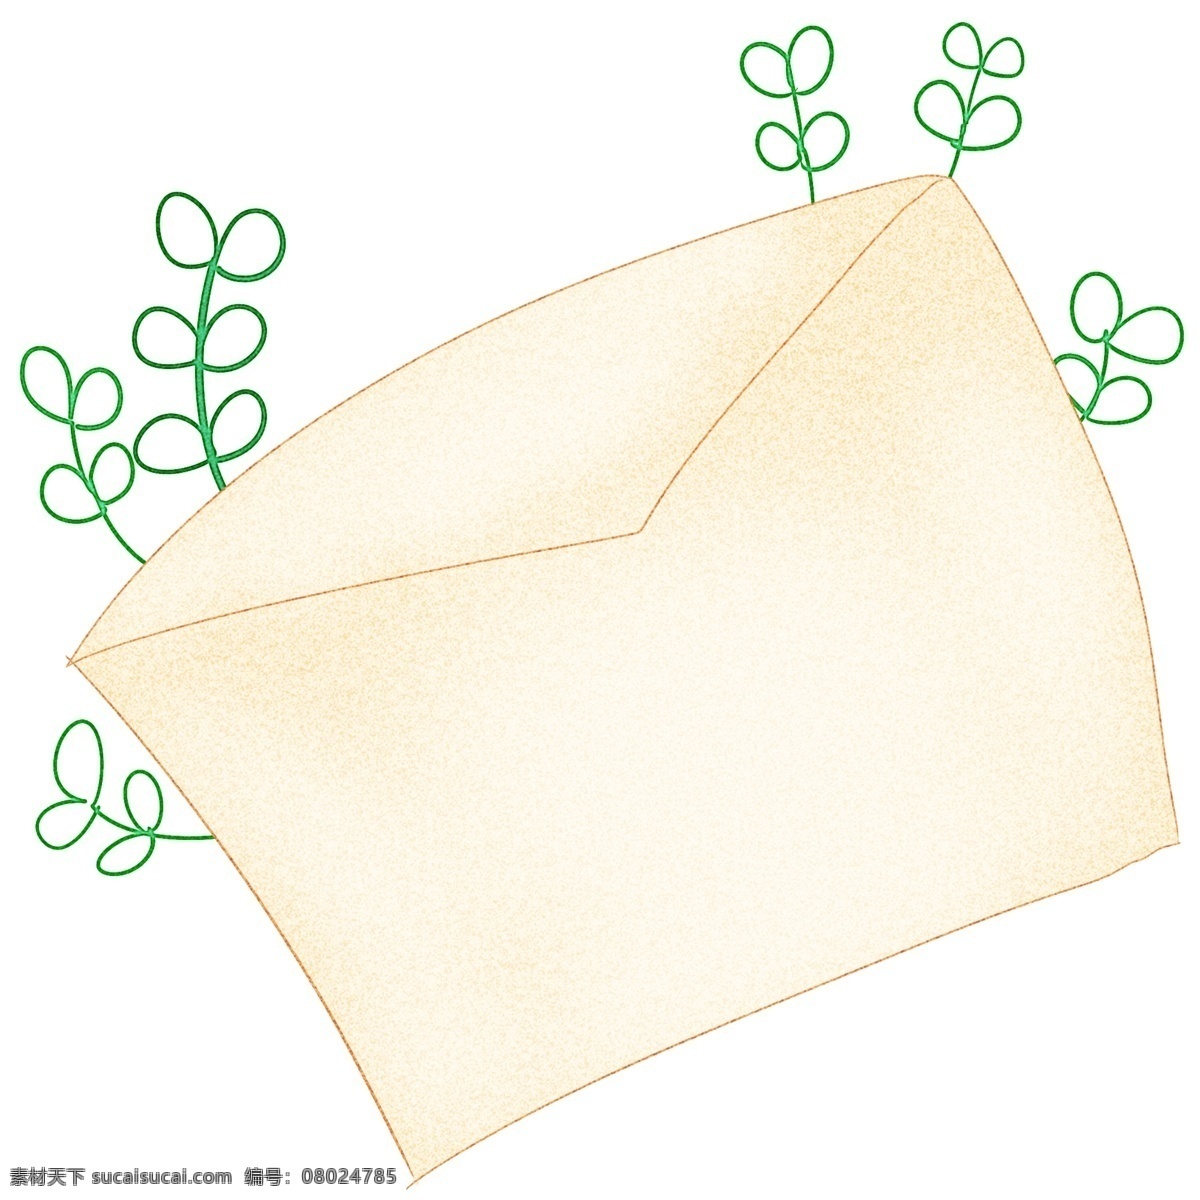 创意 信件 边框 装饰 创意边框 信件边框 绿色植物装饰 创意植物 绿叶 枝条 可爱的边框 边框装饰